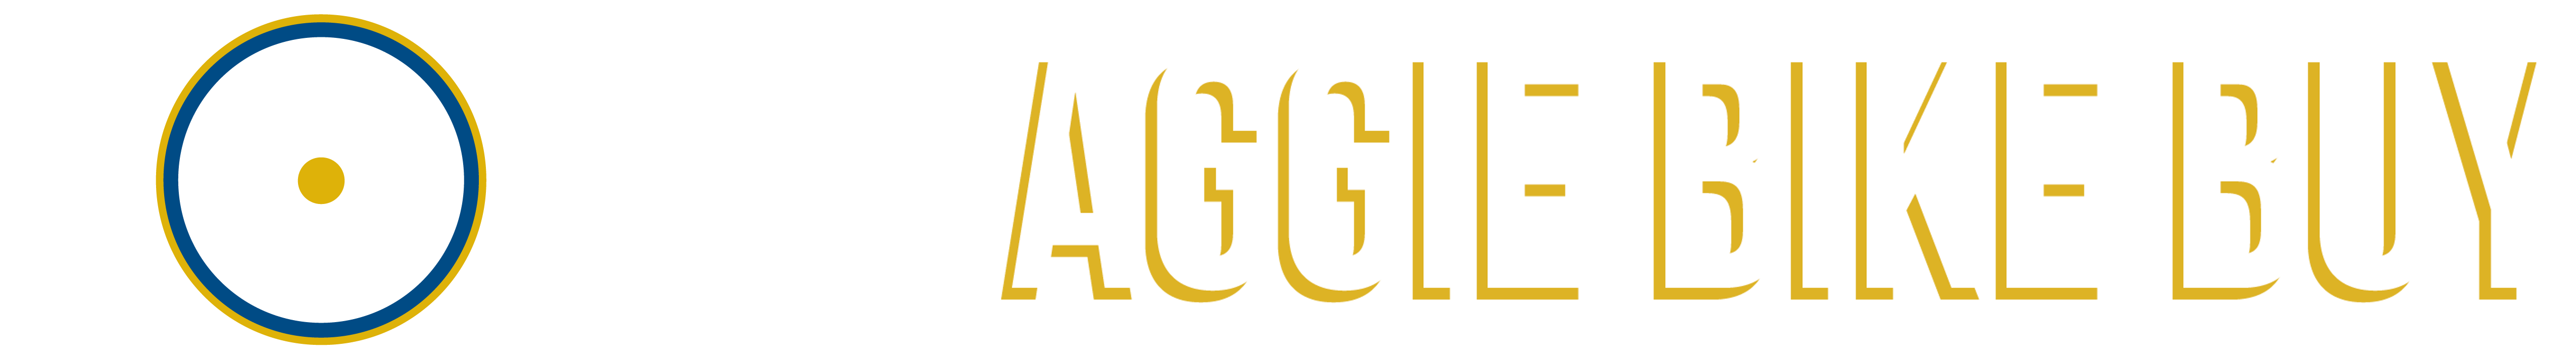 Aggie Bike Buy